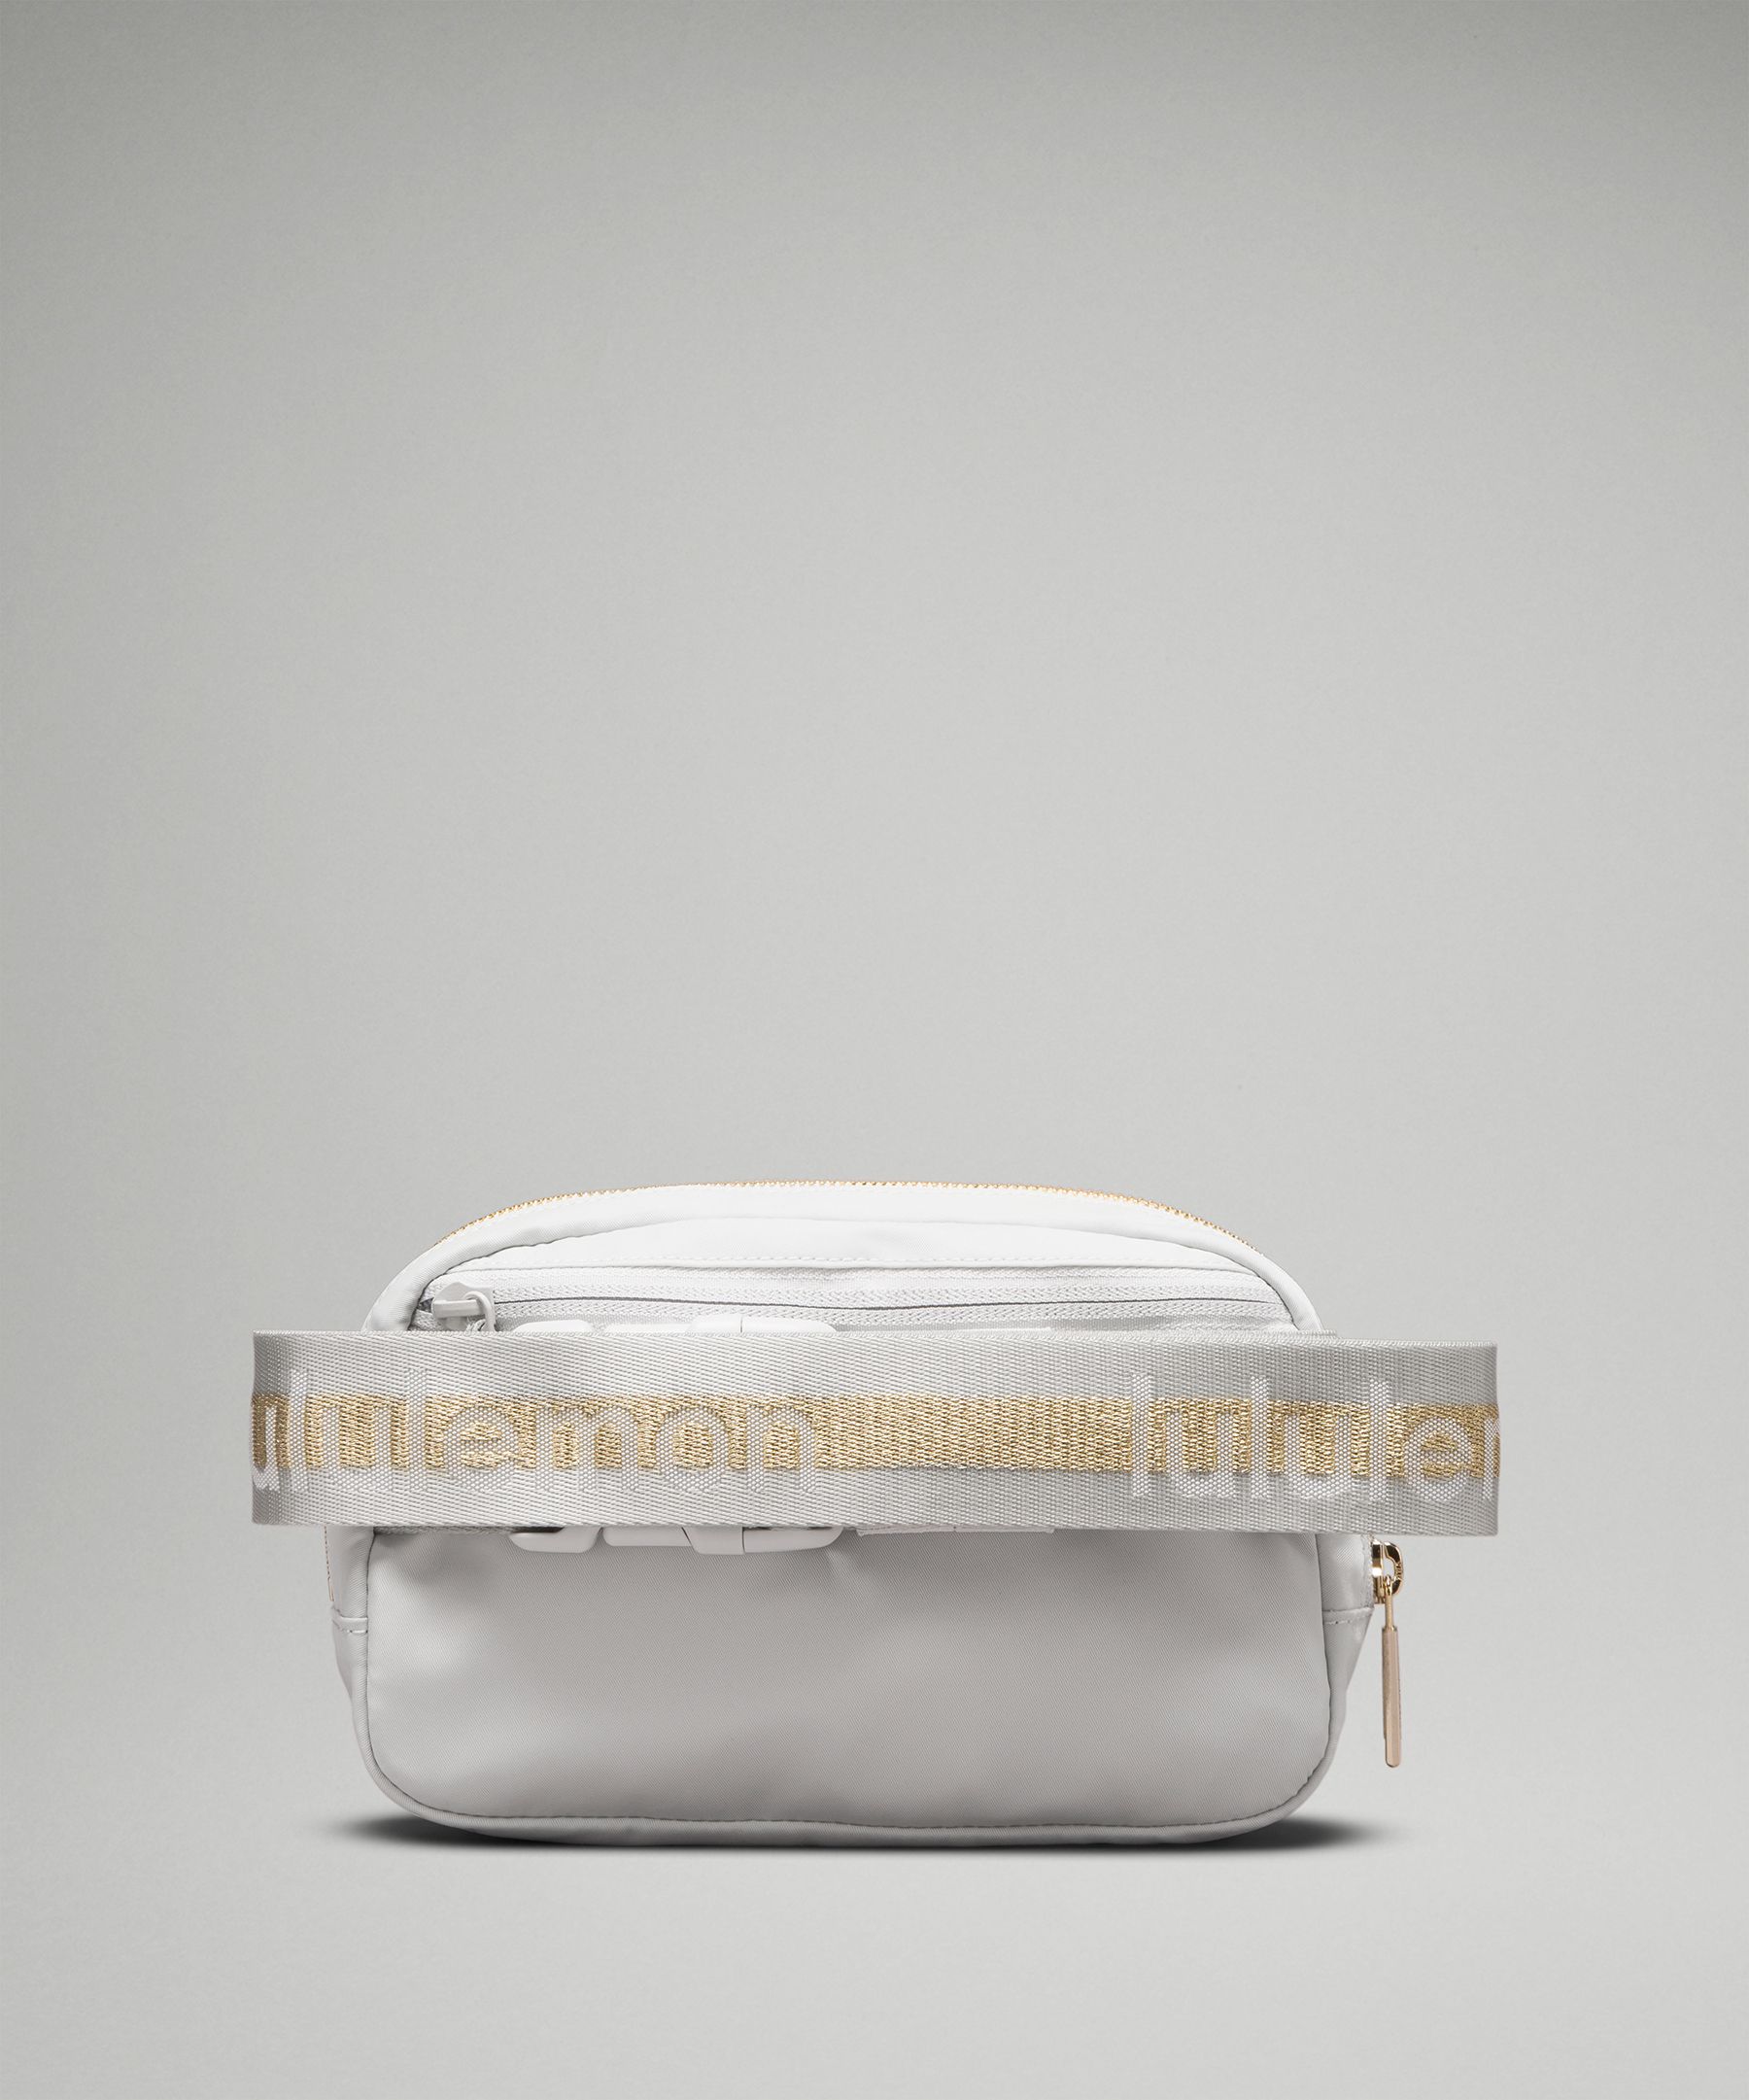 Lululemon Everywhere Belt Bag 1L - Vapor/Gold/White